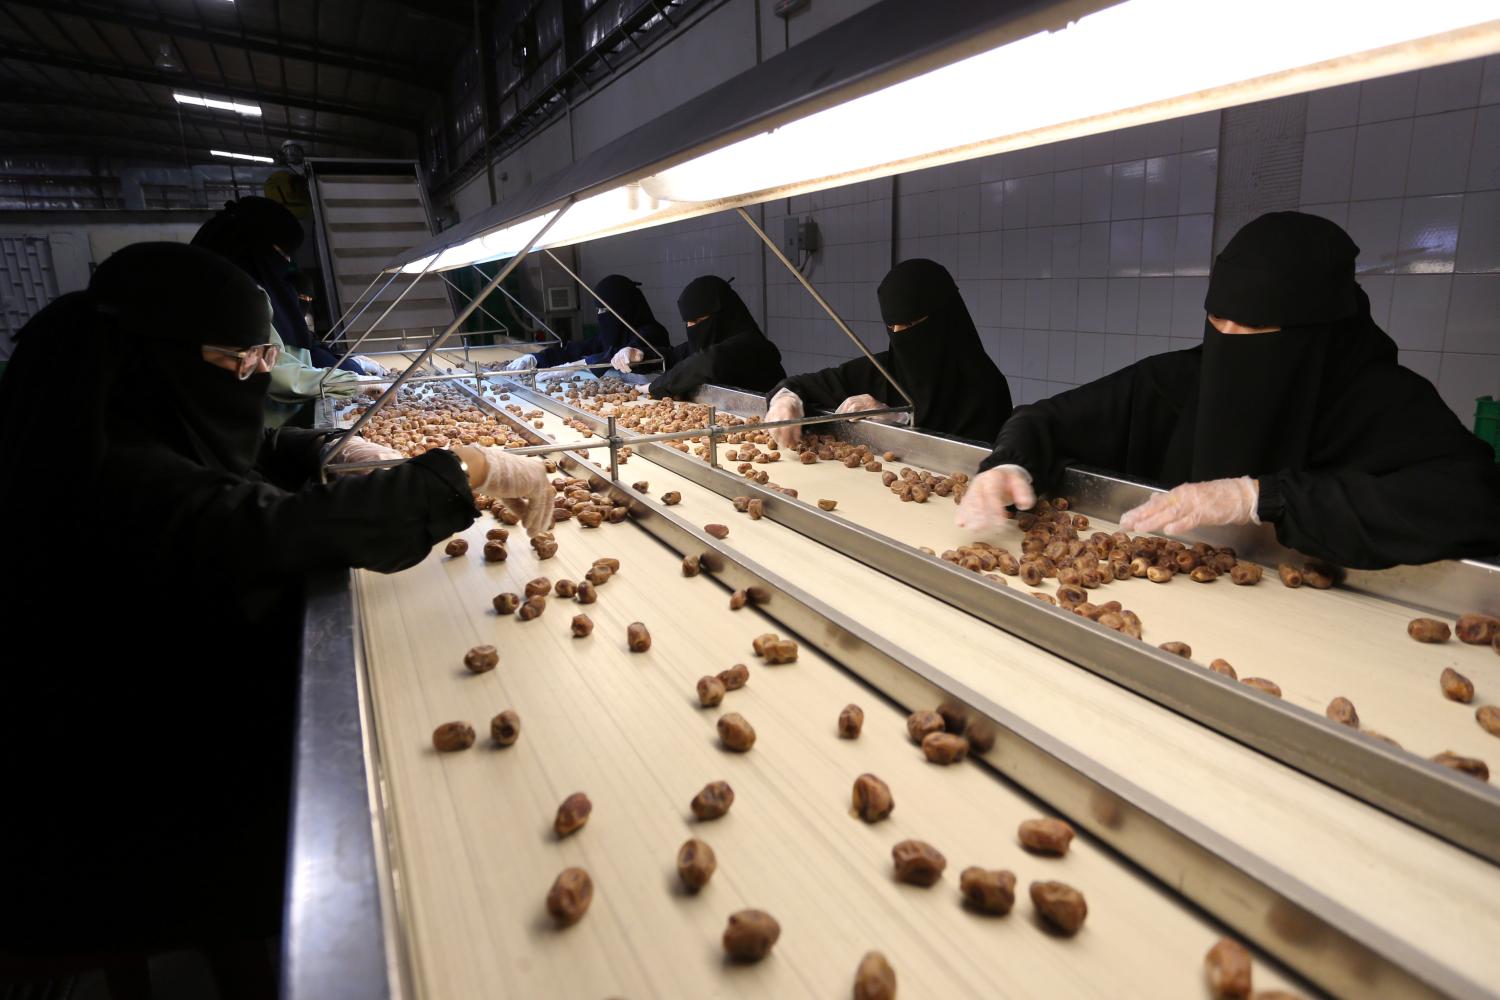 Saudi women work at a dates packaging factory in Al-Ahsa, Saudi Arabia, September 10, 2020. Picture taken September 10, 2020. REUTERS/Ahmed Yosri